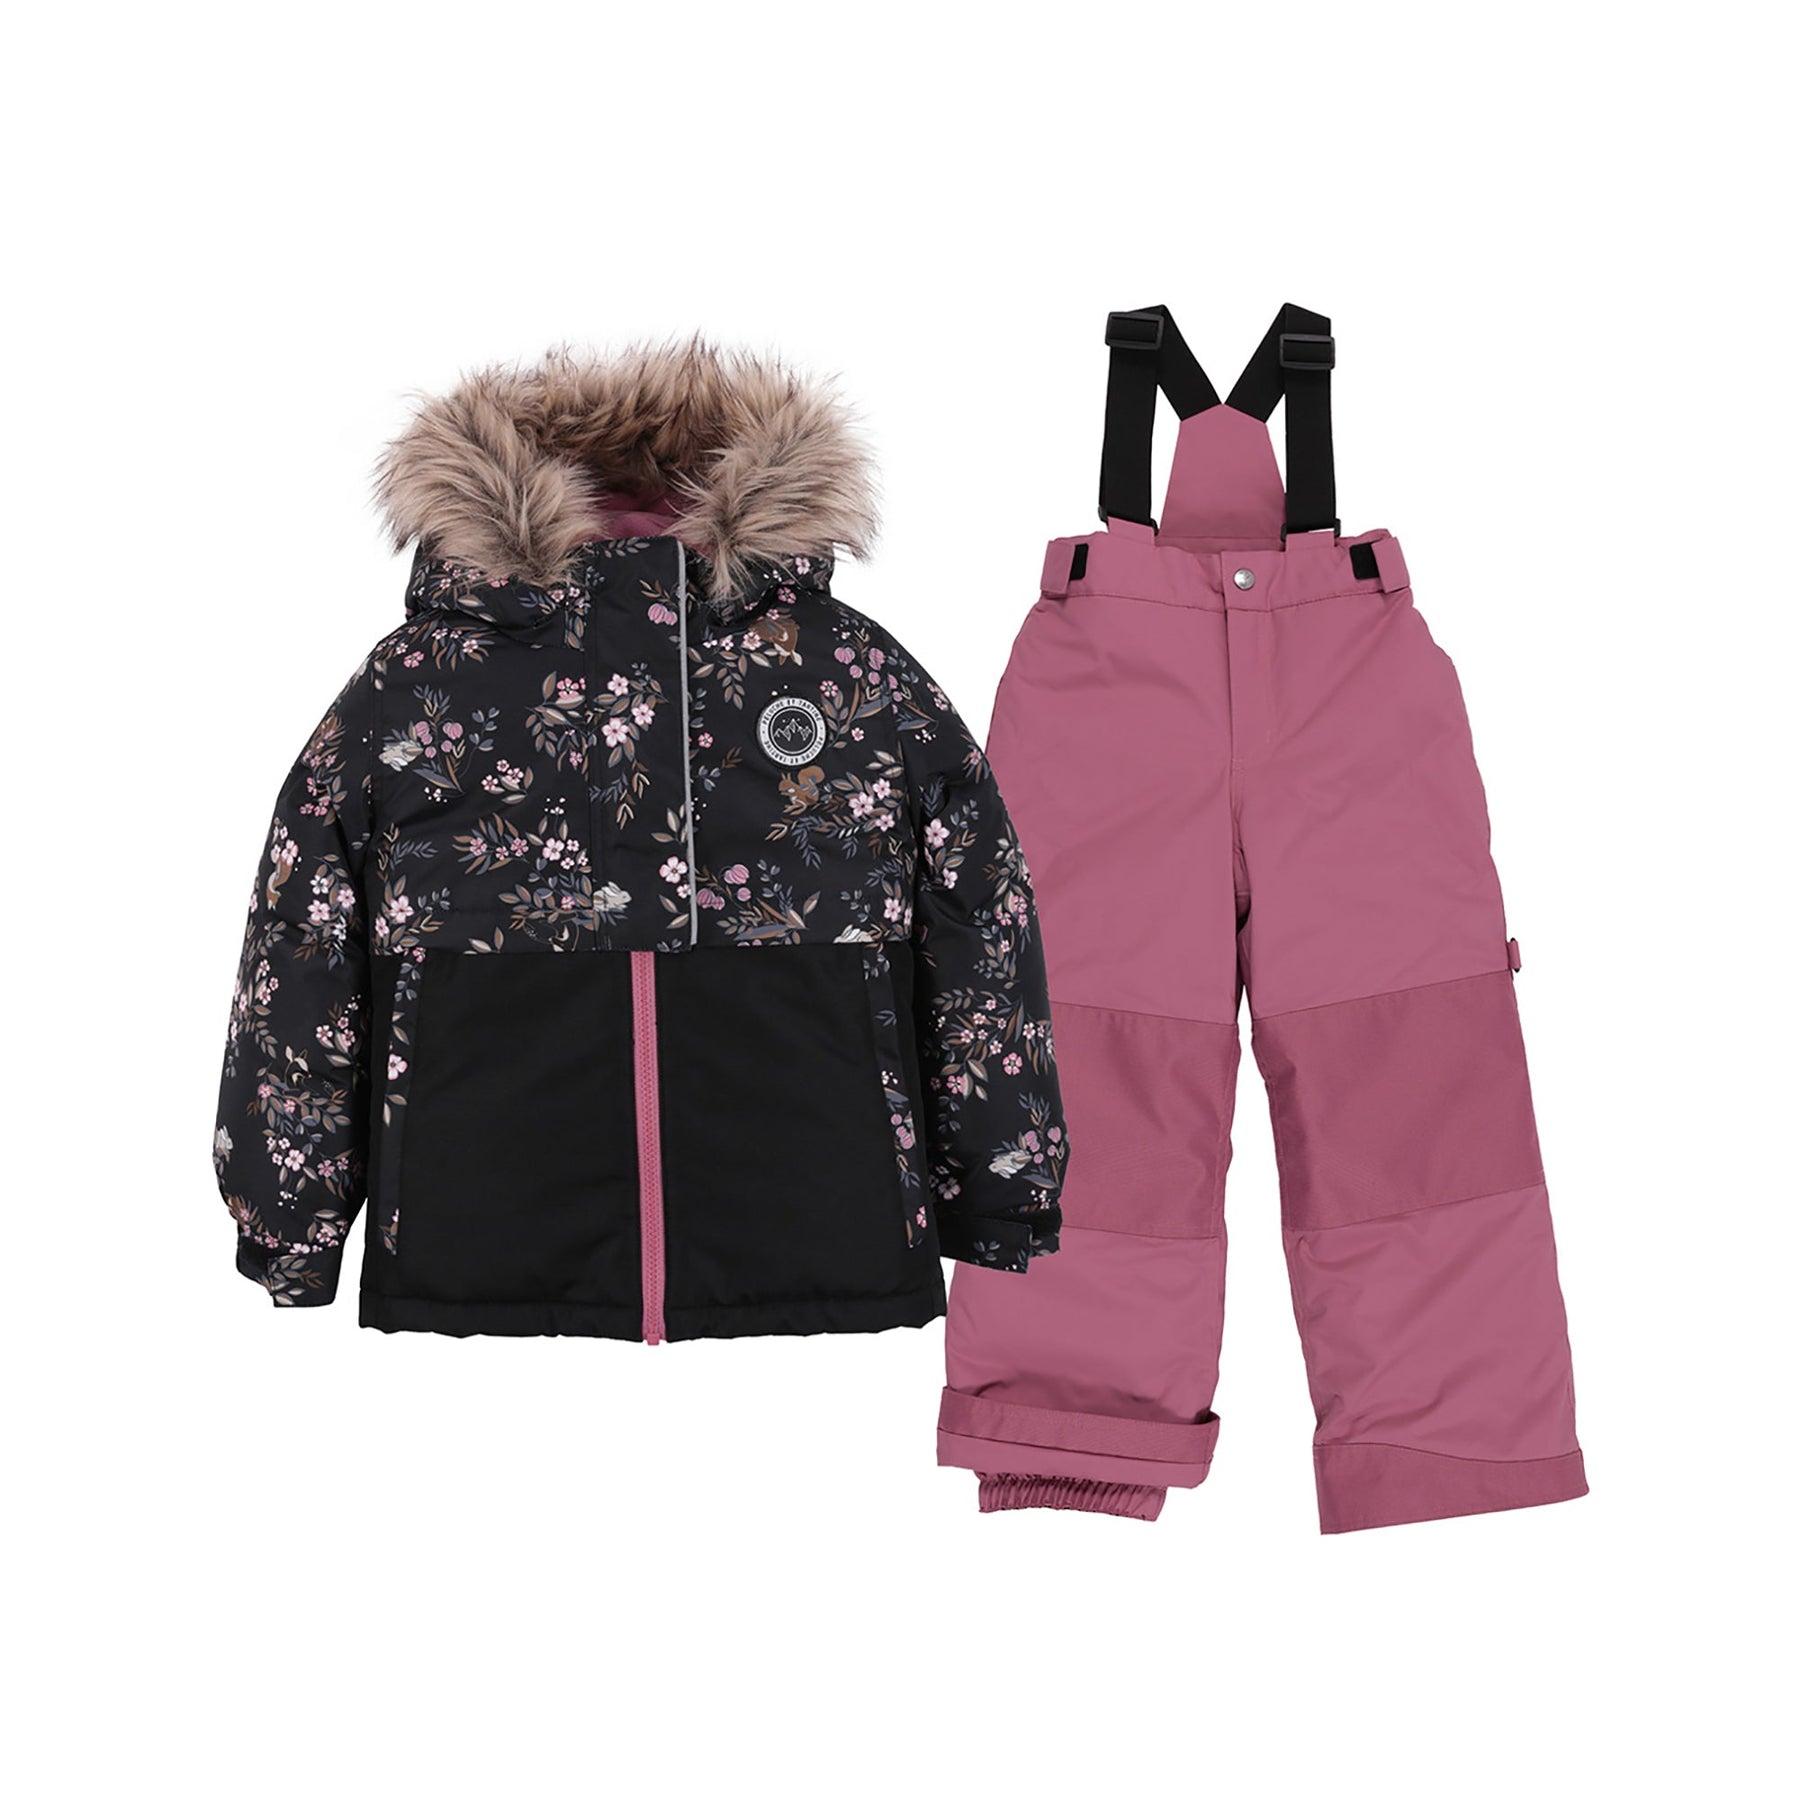 Habit de neige pour enfant fille par Peluche Et Tartine | Nola F23M56 Noir | Boutique Flos, vêtements mode pour bébés et enfants